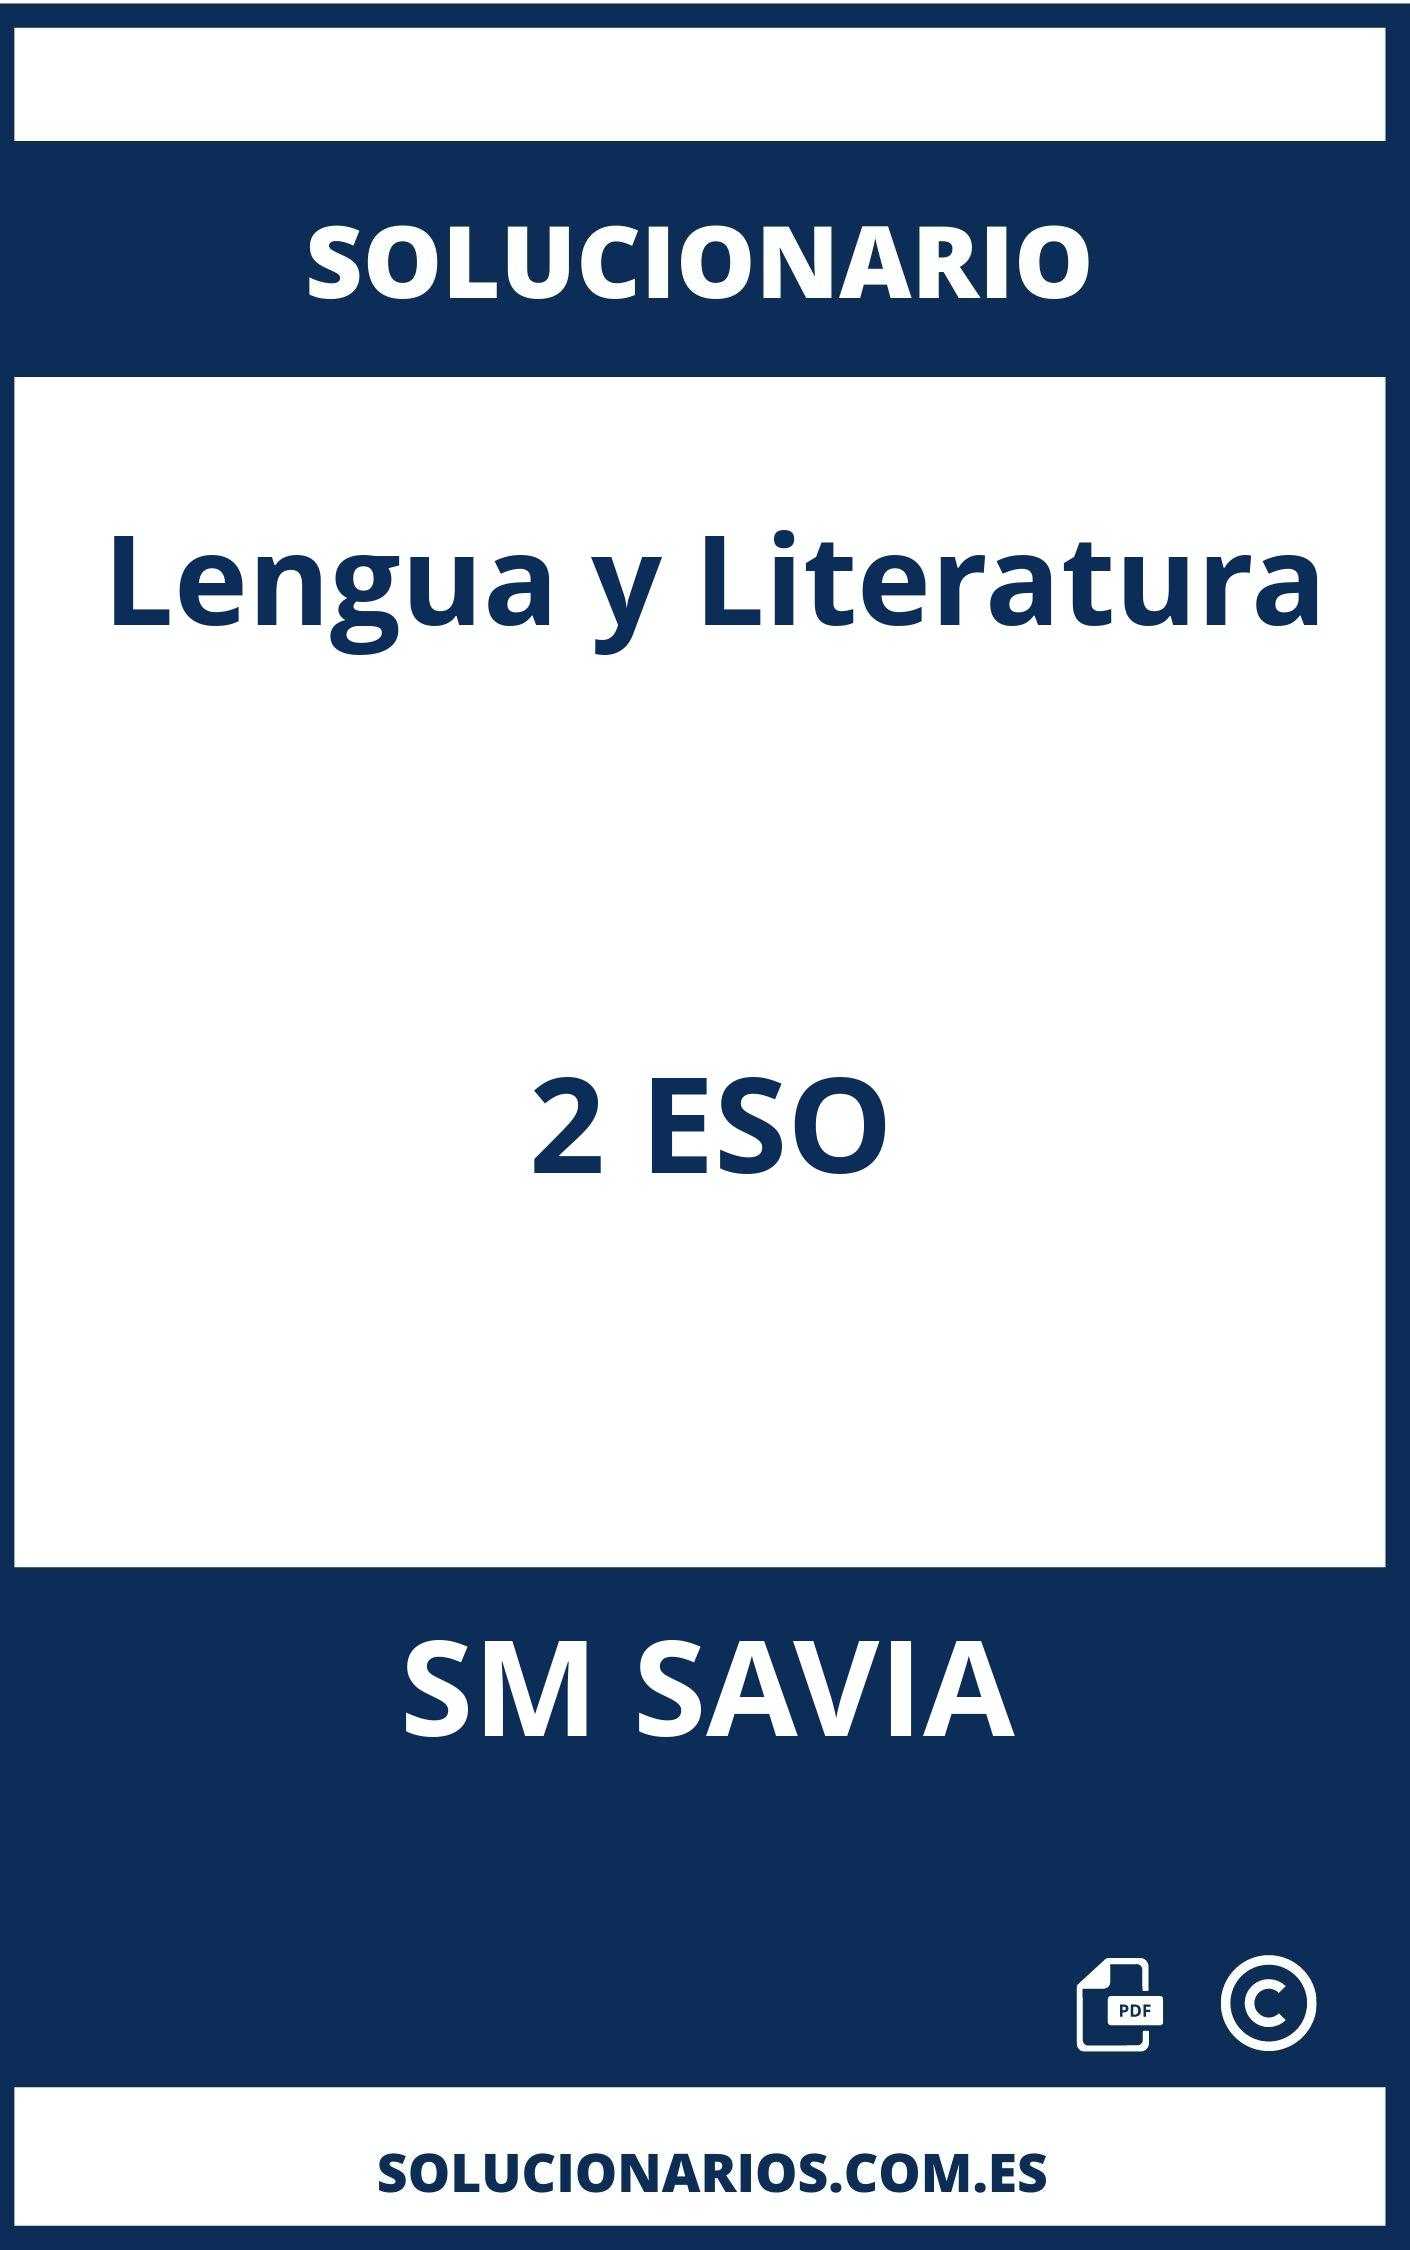 Solucionario Lengua y Literatura 2 ESO SM SAVIA